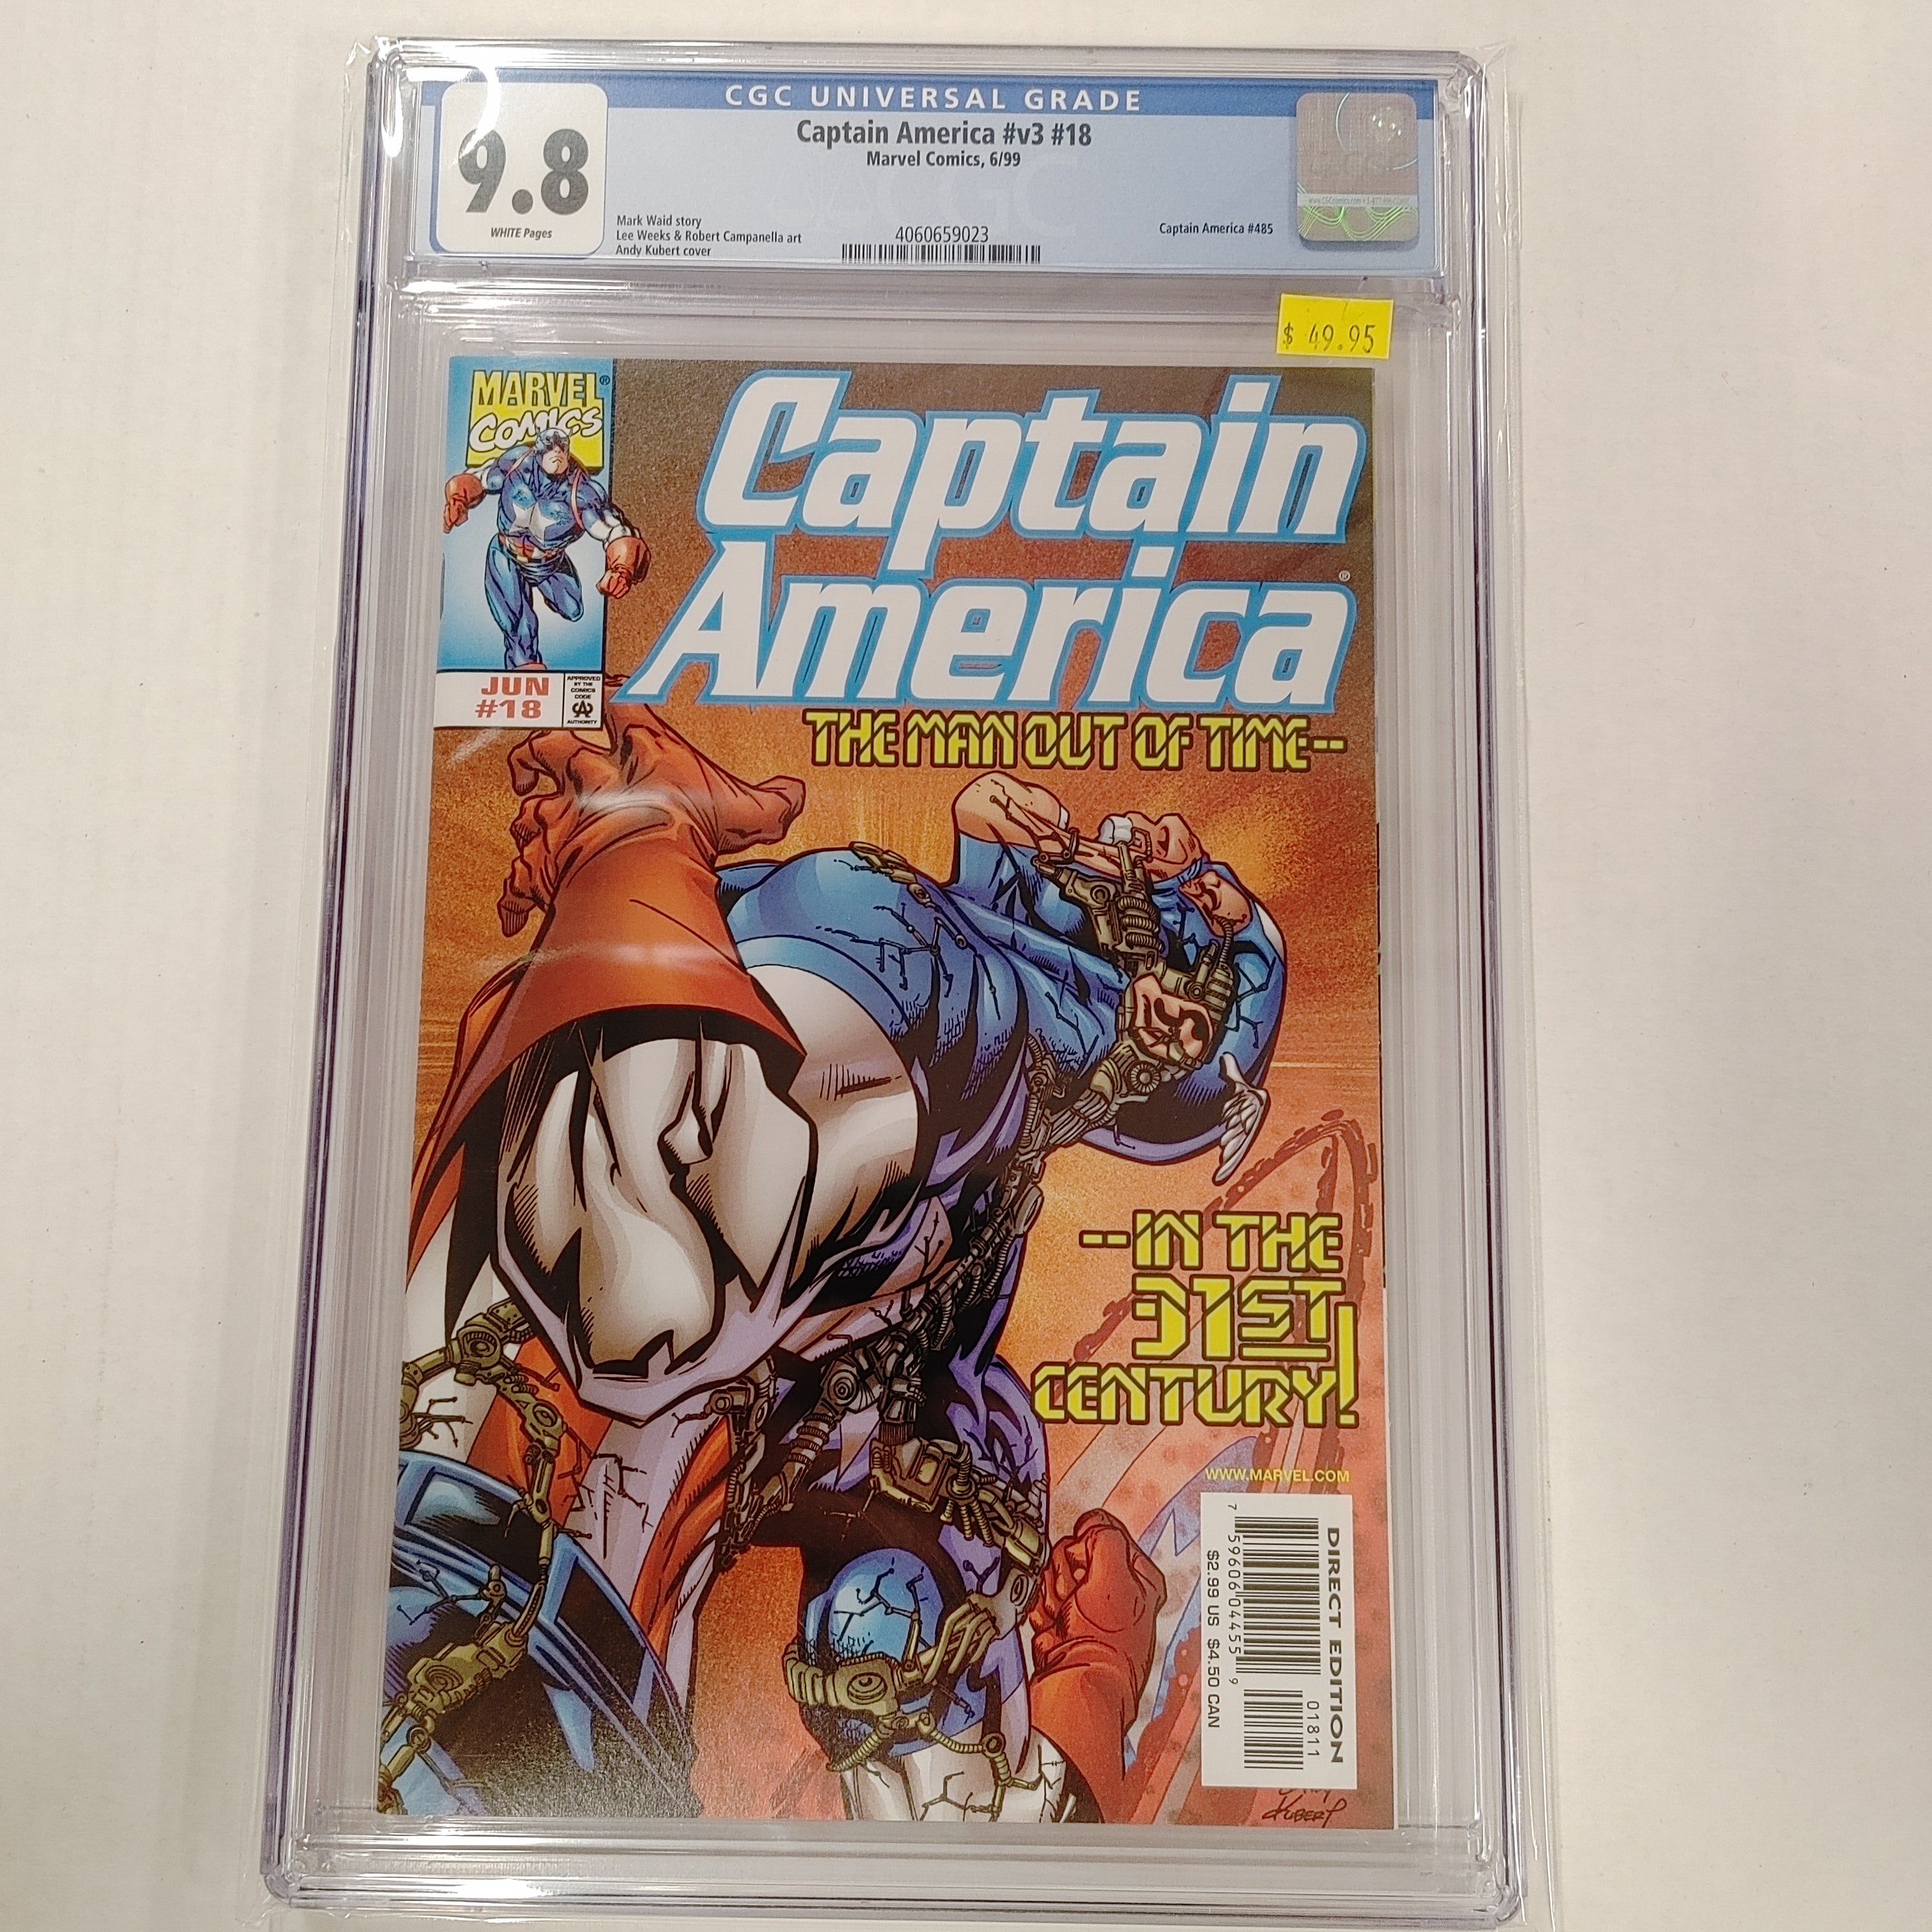 Captain America (vol #3) #18 CGC 9.8 | L.A. Mood Comics and Games